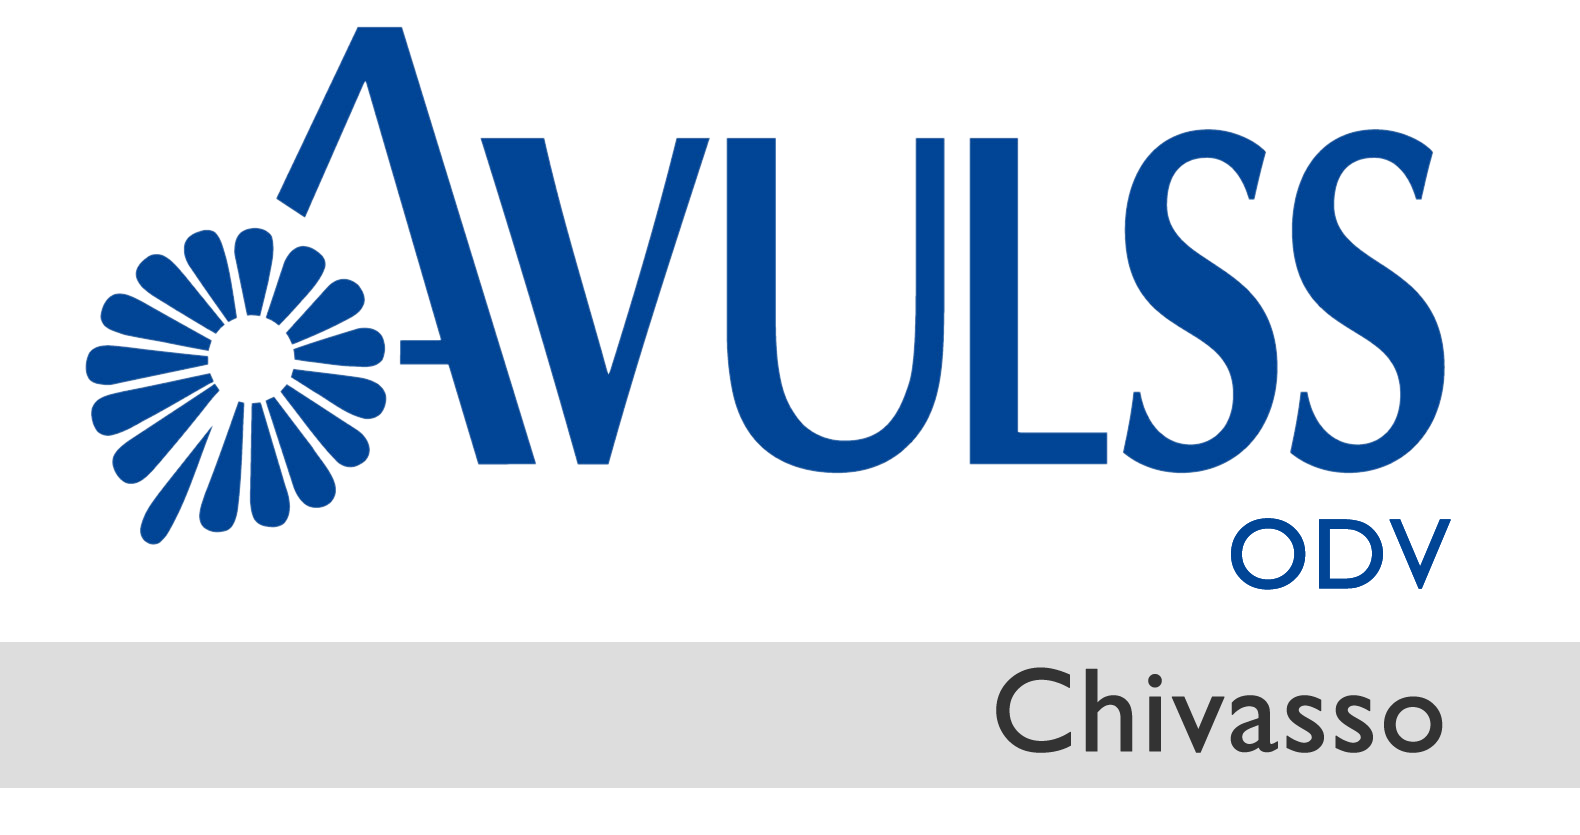 Associazione AVULSS Chivasso